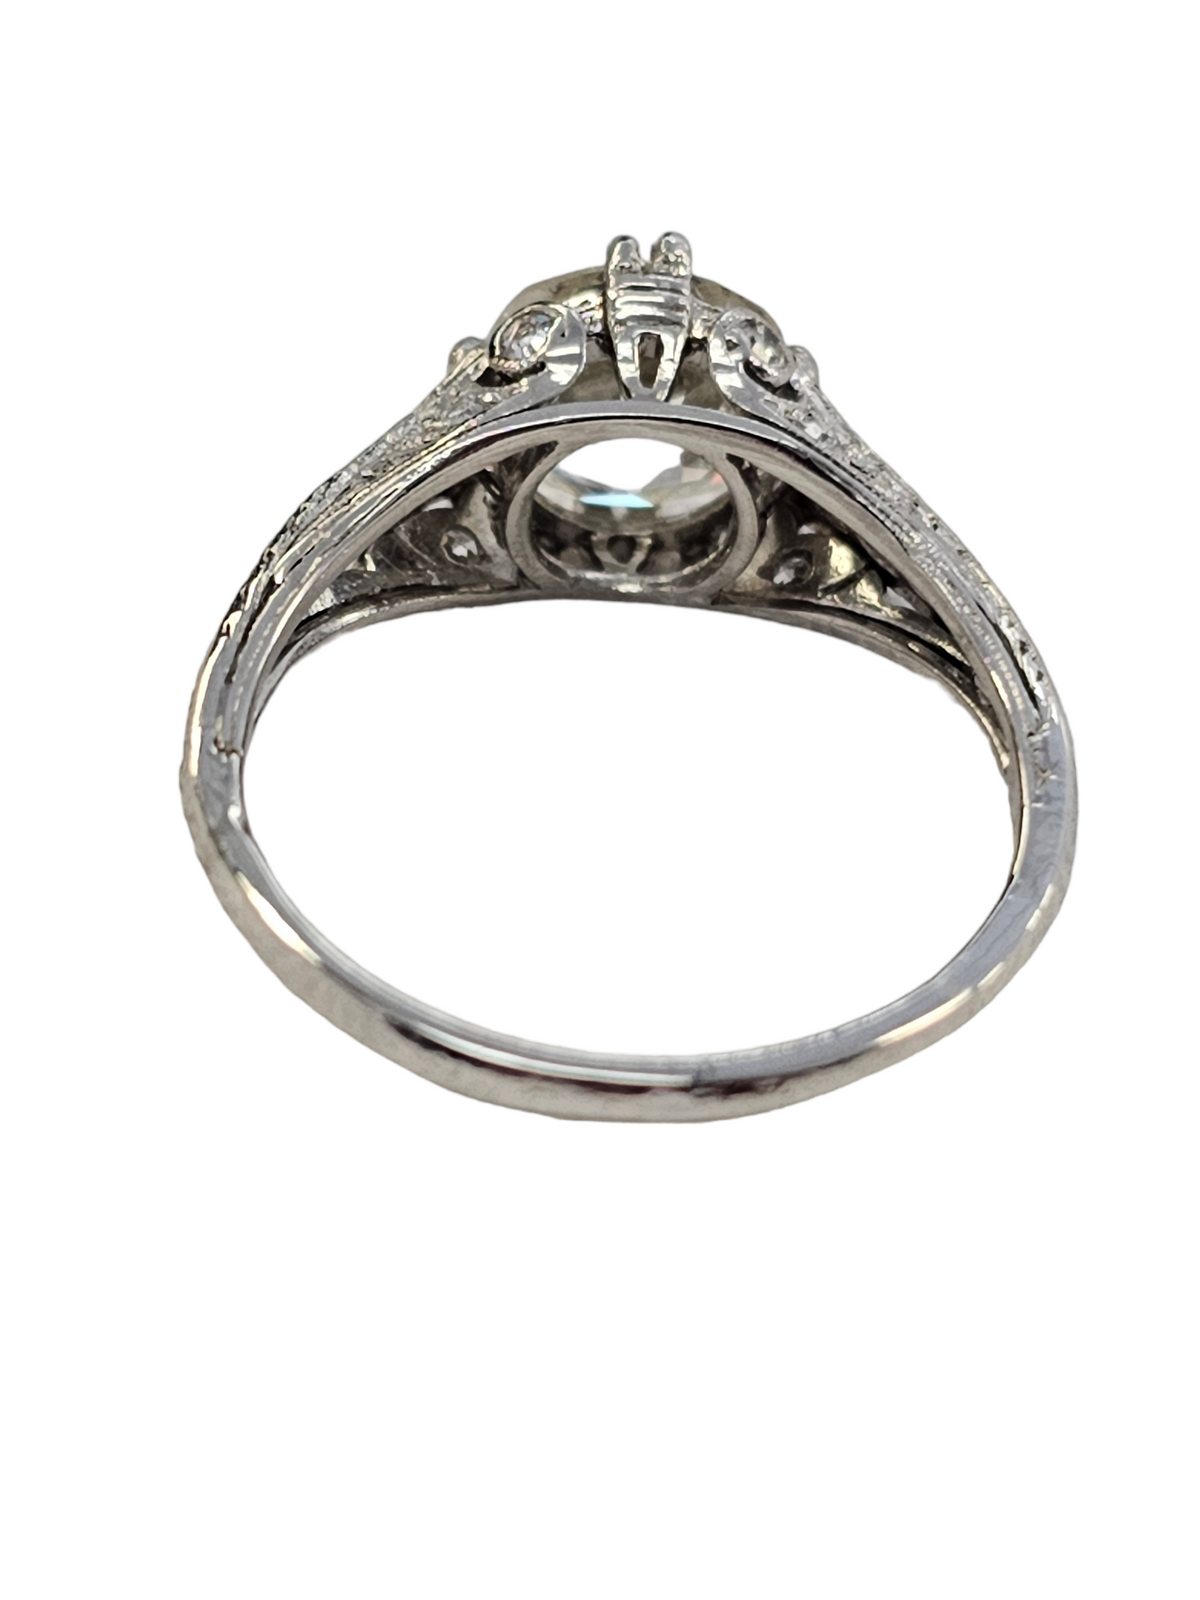 Antique Diamond Engagement Ring, 2.13 Carats, K, VS2, in Platinum.